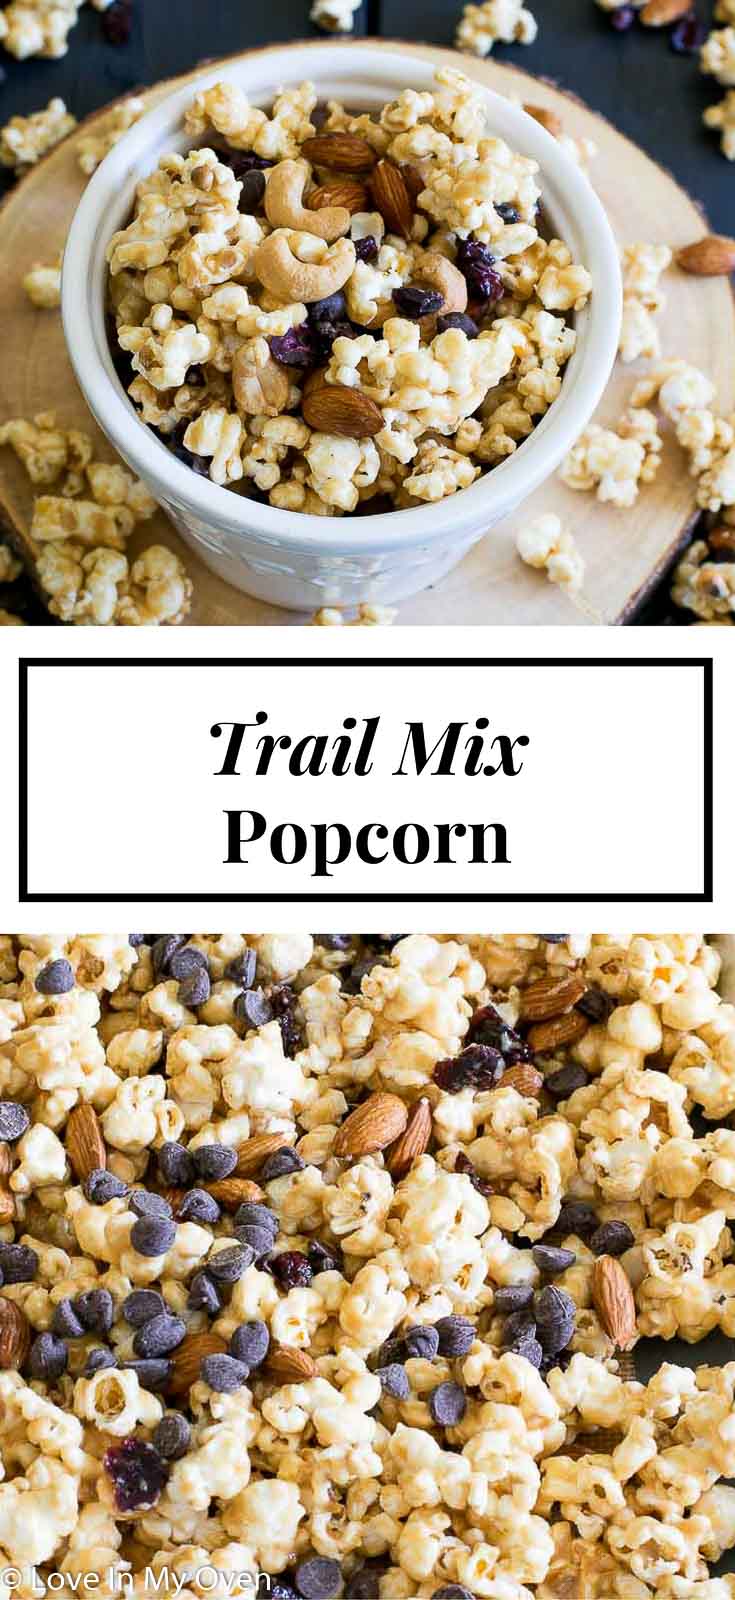 Trail Mix Popcorn